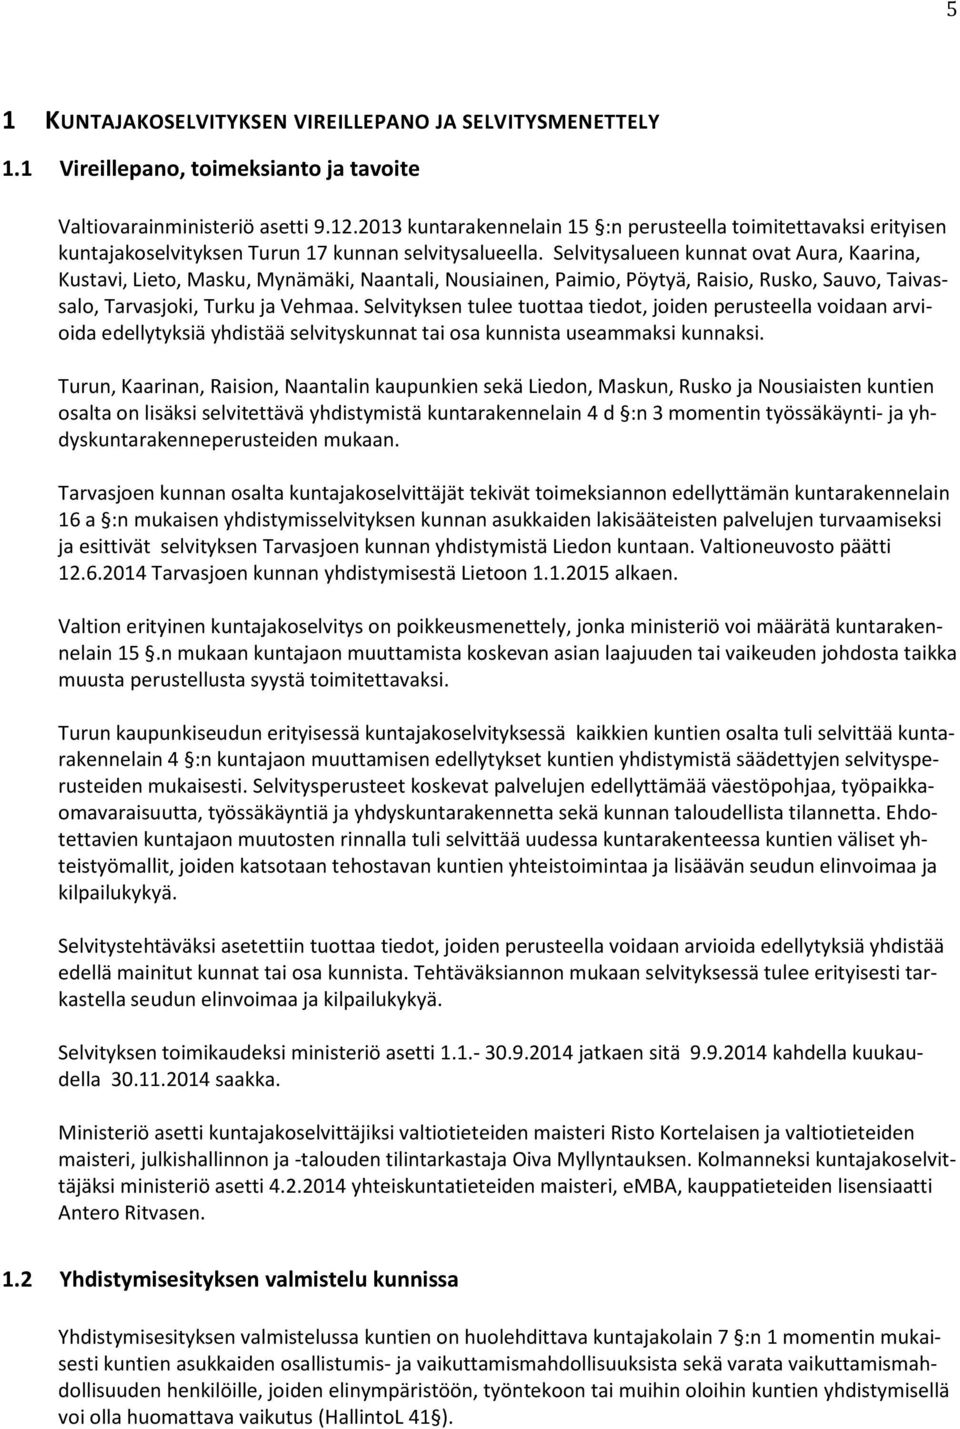 Selvitysalueen kunnat ovat Aura, Kaarina, Kustavi, Lieto, Masku, Mynämäki, Naantali, Nousiainen, Paimio, Pöytyä, Raisio, Rusko, Sauvo, Taivassalo, Tarvasjoki, Turku ja Vehmaa.